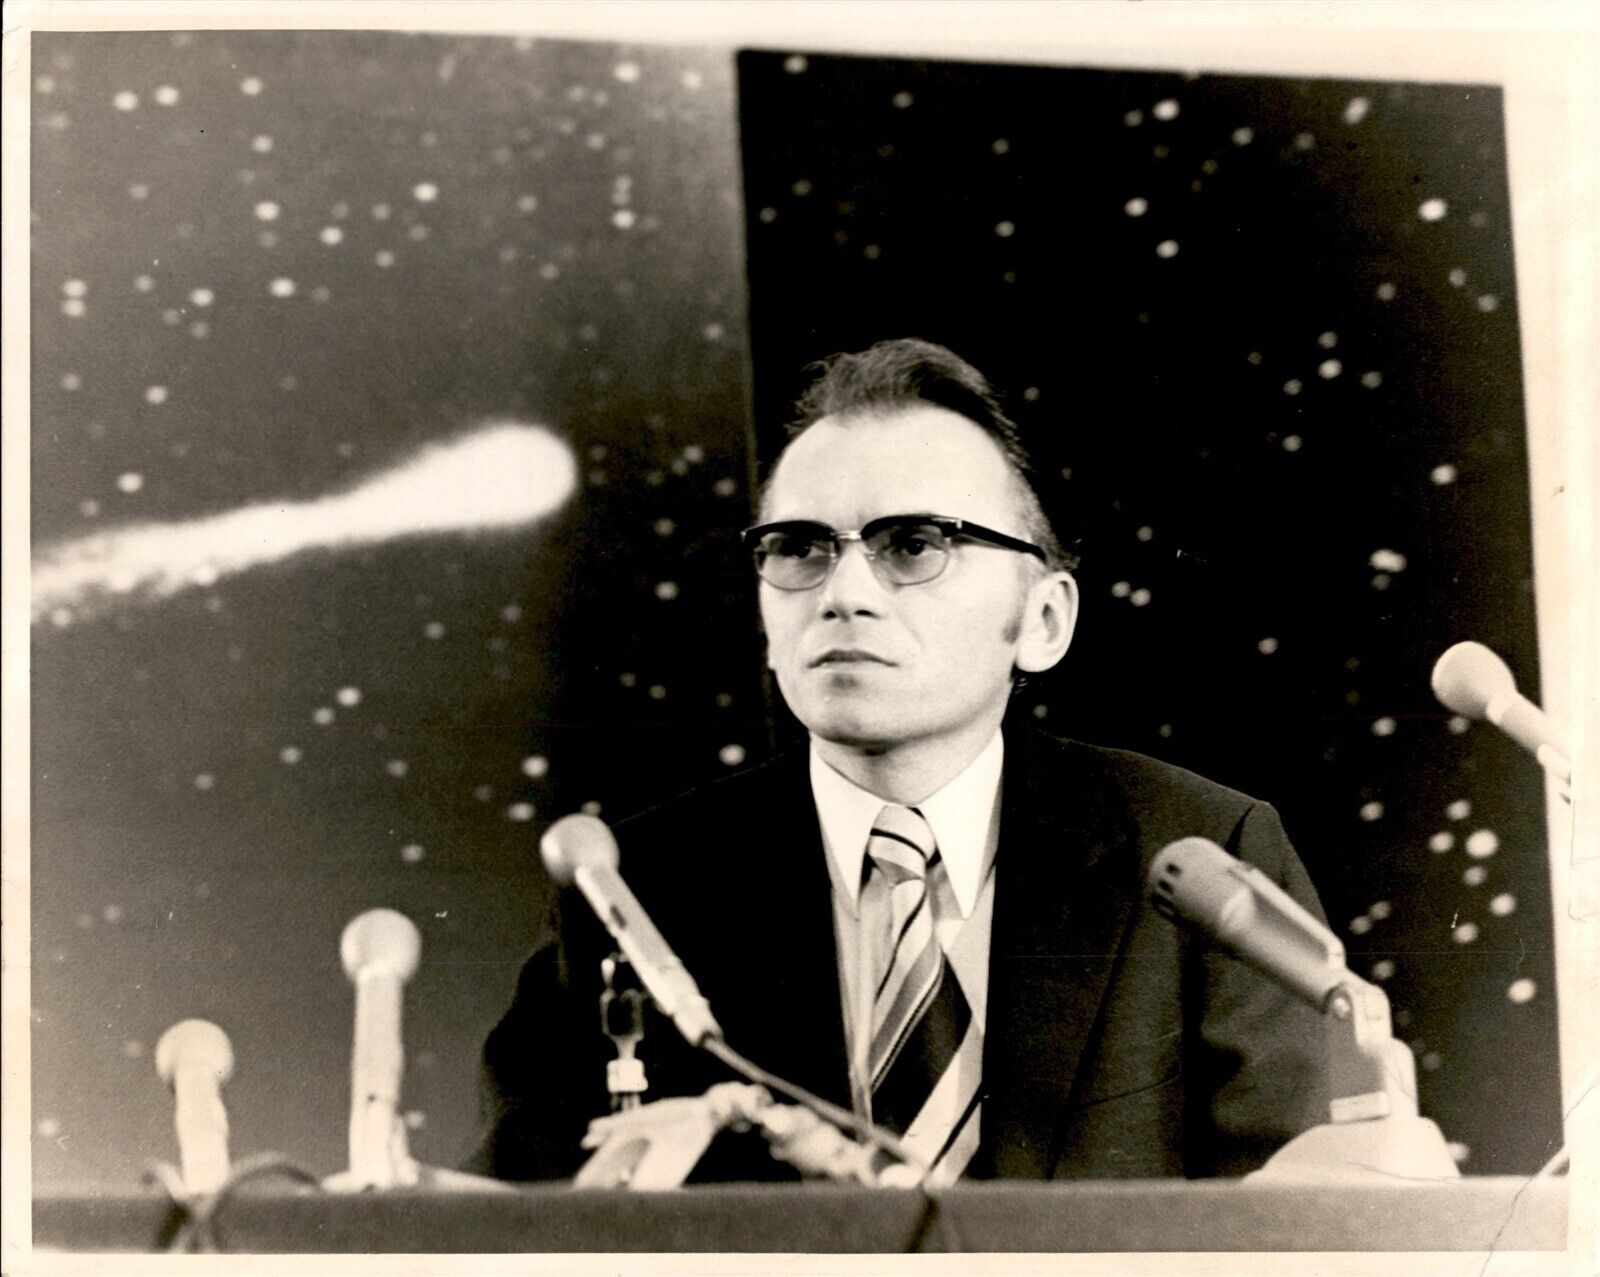 LD307 1973 Original Official NASA Photo PROFESSOR LUBOS KOHOUTEK CZECH ASTRONAUT